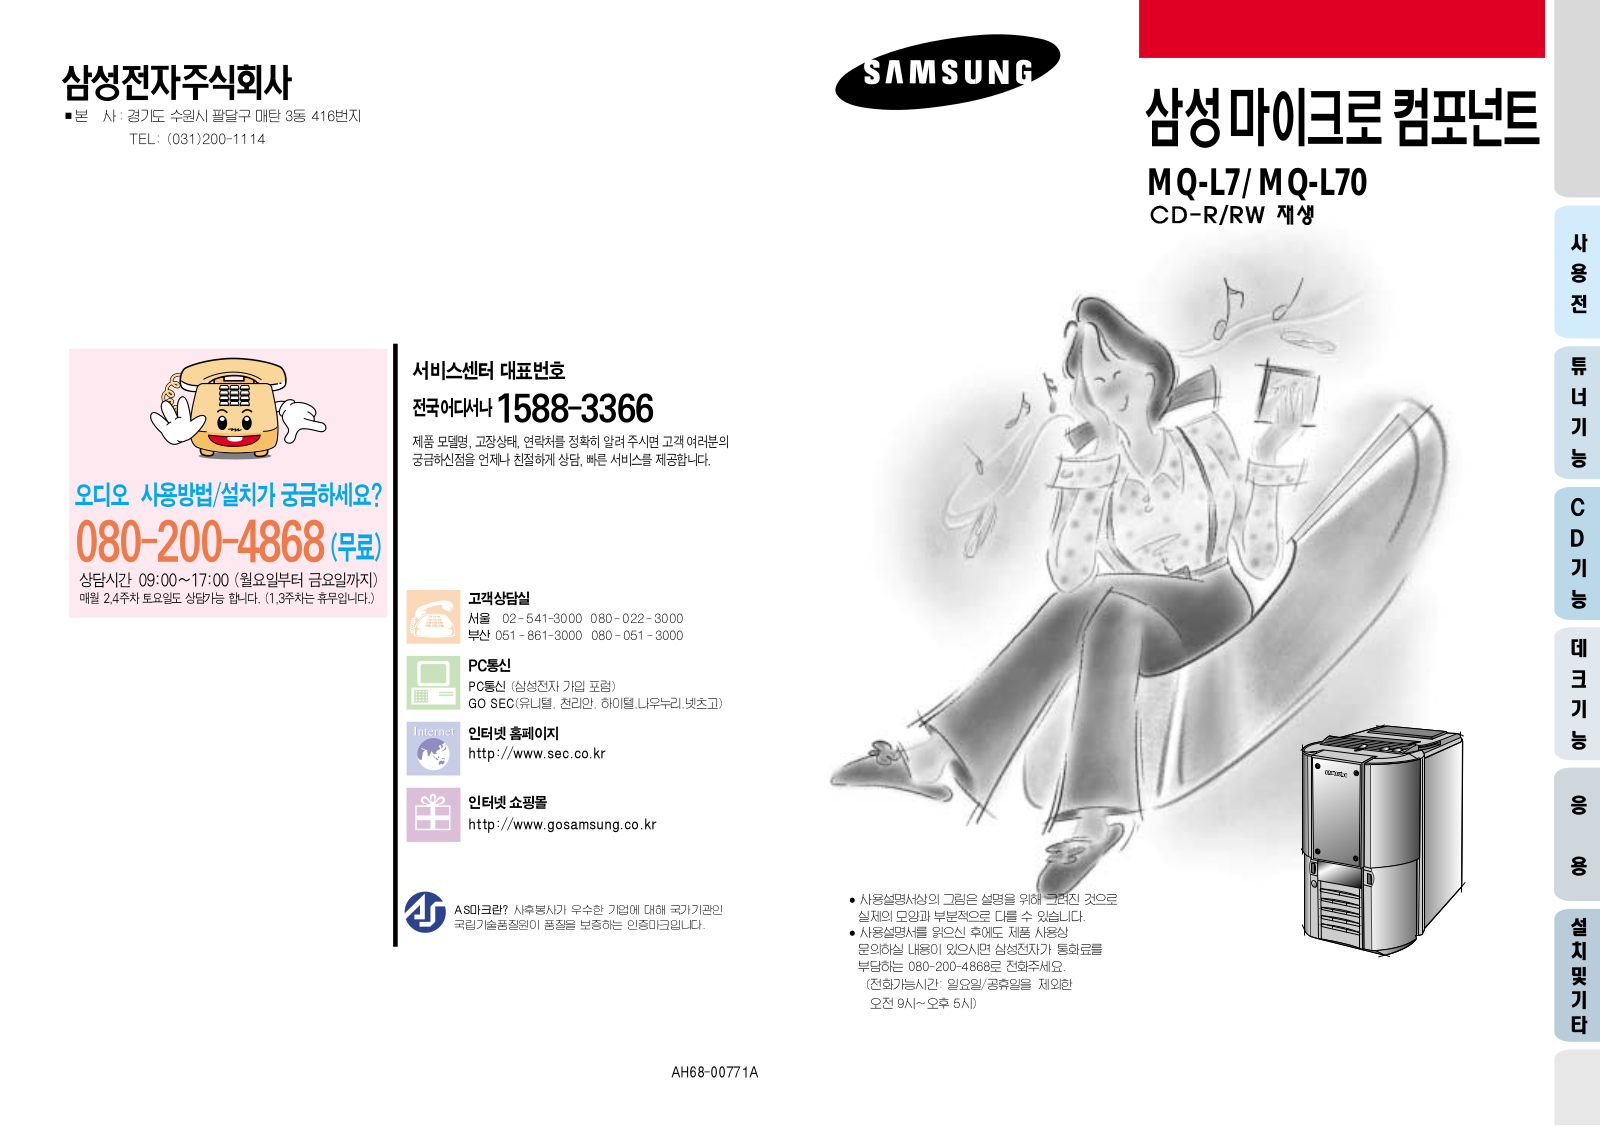 Samsung MM-L7, MM-L70 INTRODUCTION